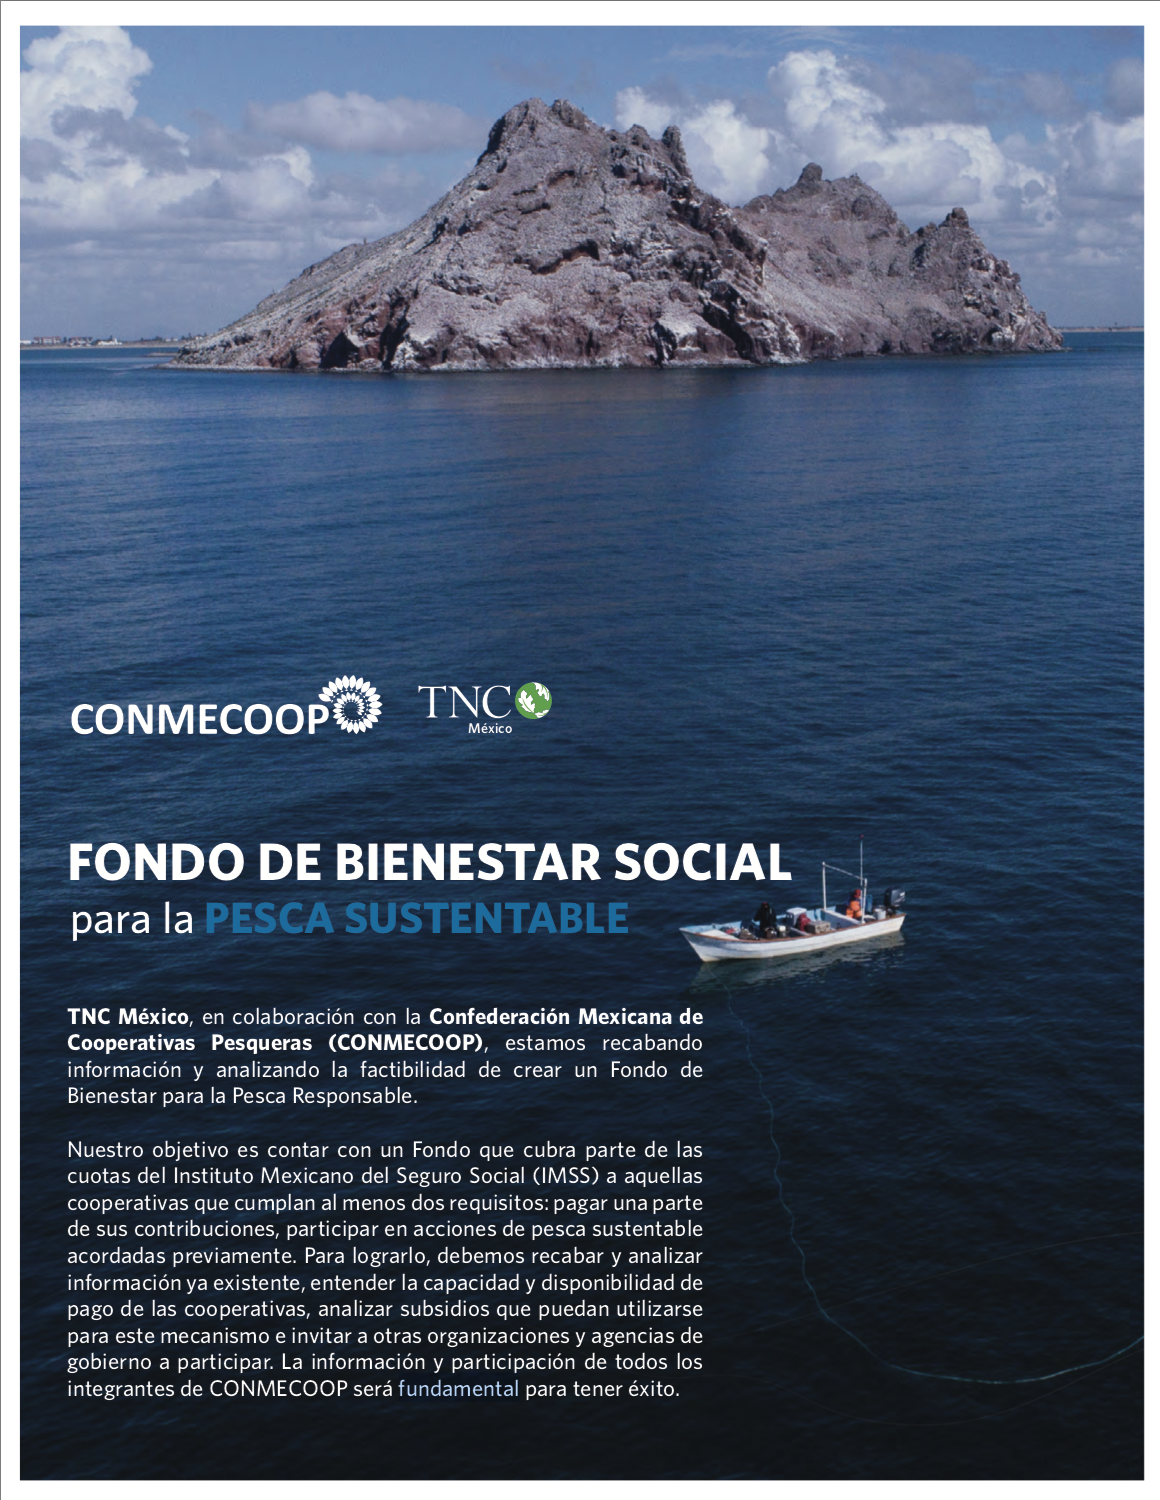 TNC México, en colaboración con la CONMECOOP, estamos analizando la factibilidad de crear un Fondo de Bienestar para la Pesca Responsable